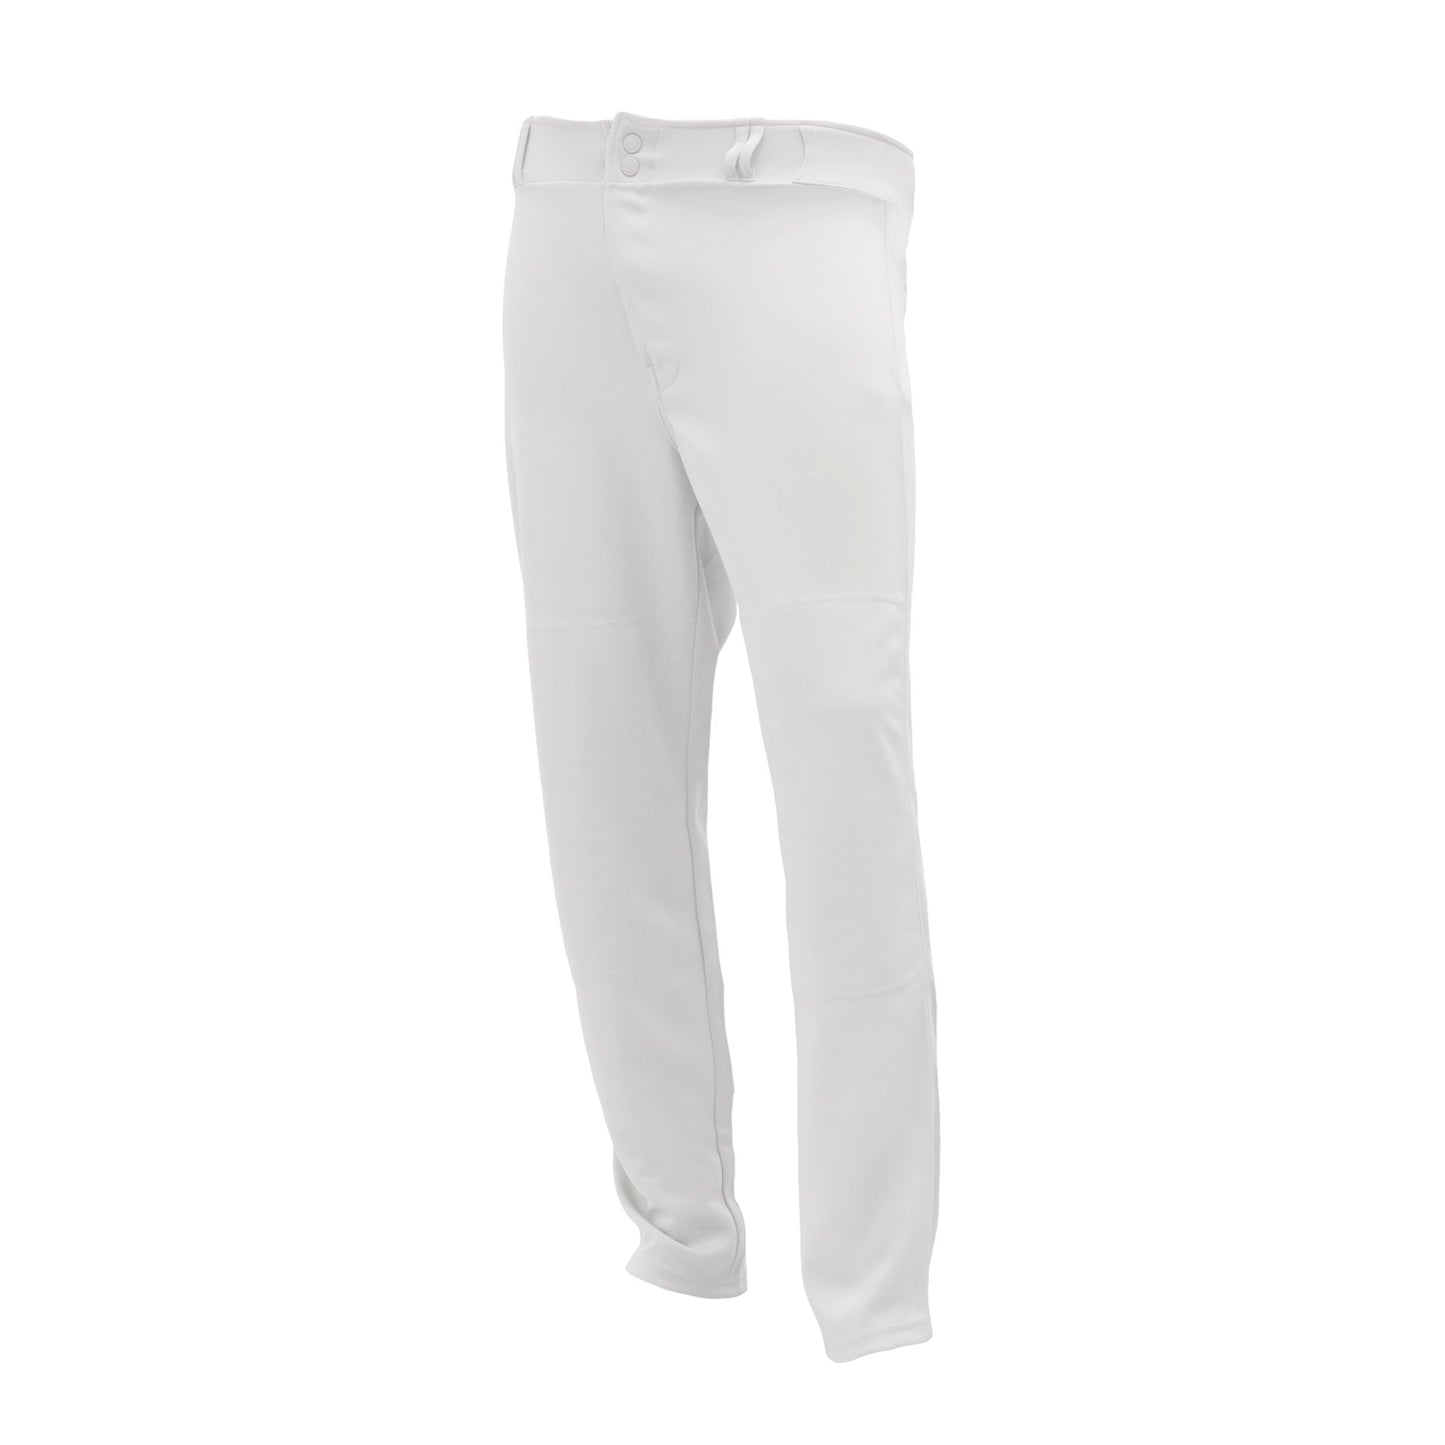 Premium Baseball Pants, Hemmed Bottom, White, ba1390-000